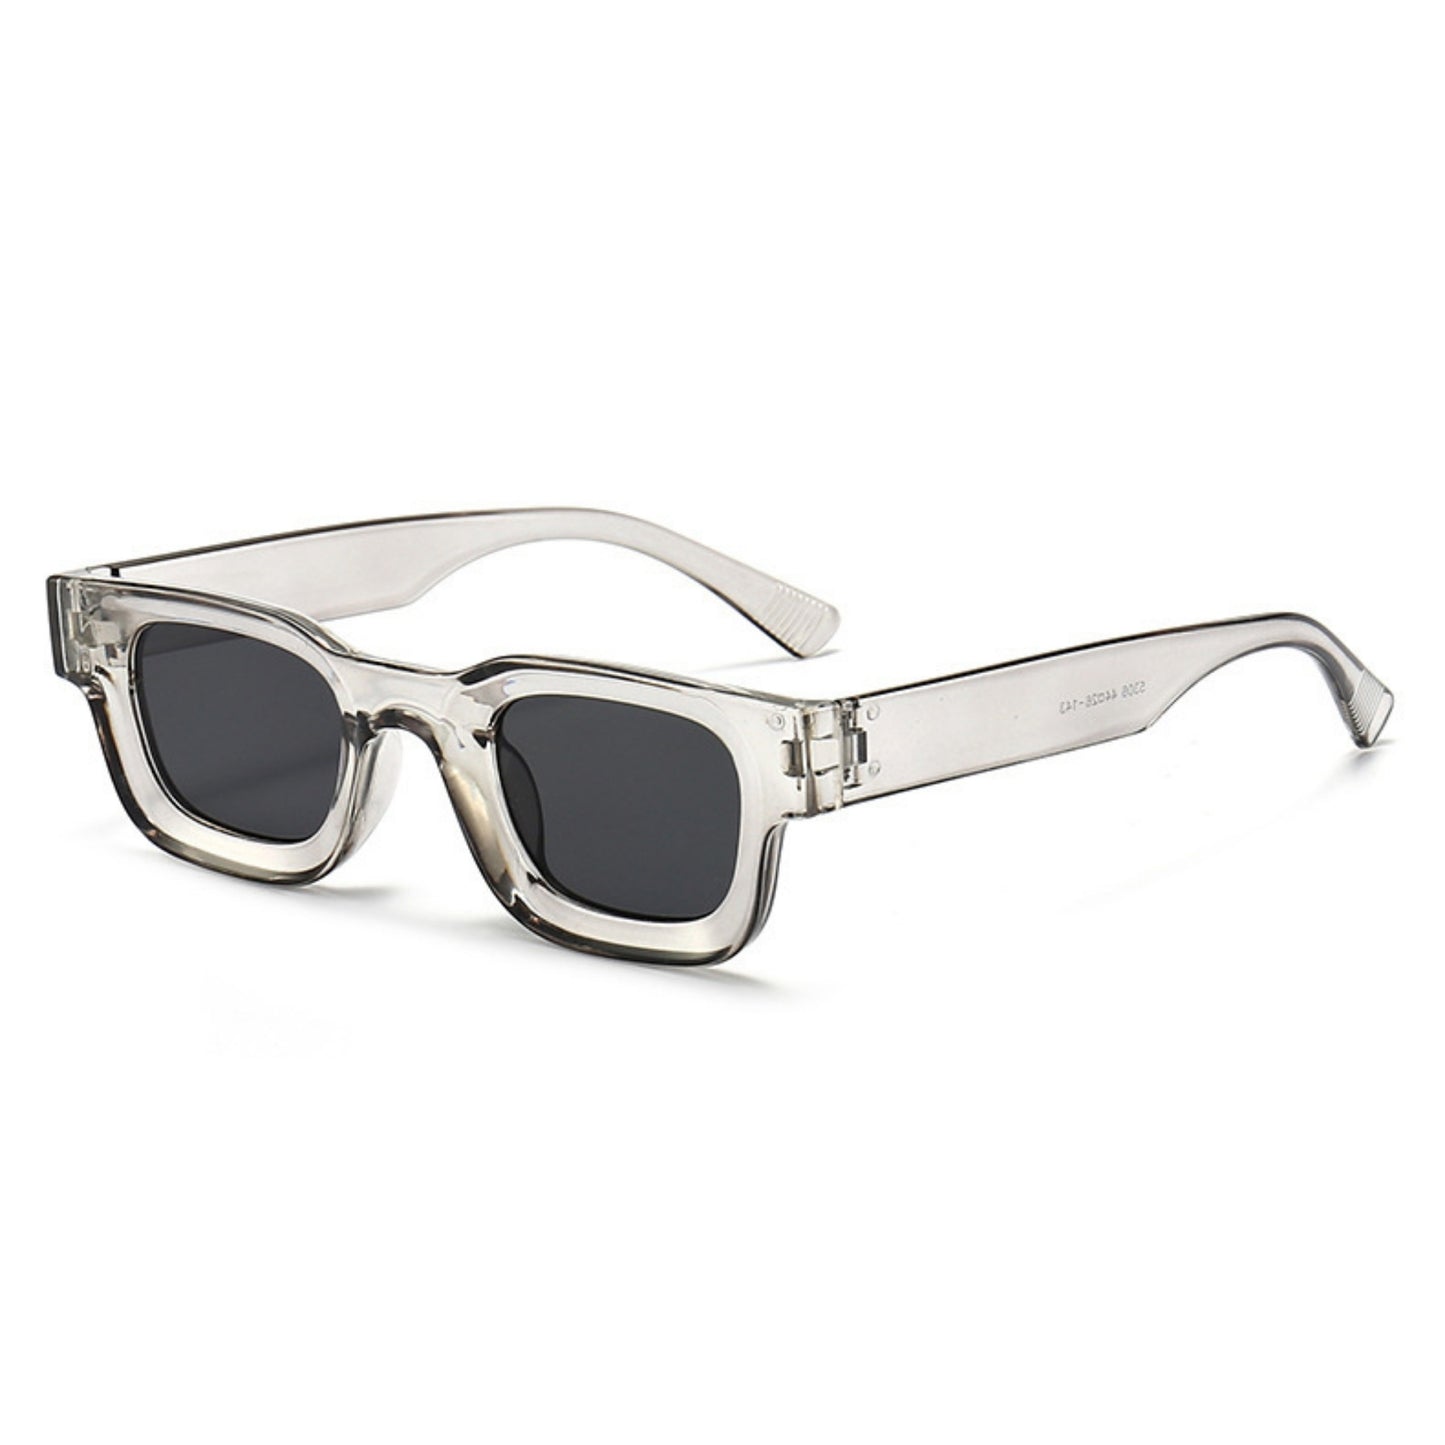 Τετράγωνα Γυαλιά ηλίου Taf από την Exposure Sunglasses με προστασία UV400 με ασημί σκελετό και μαύρο φακό.Πλαινή όψη.